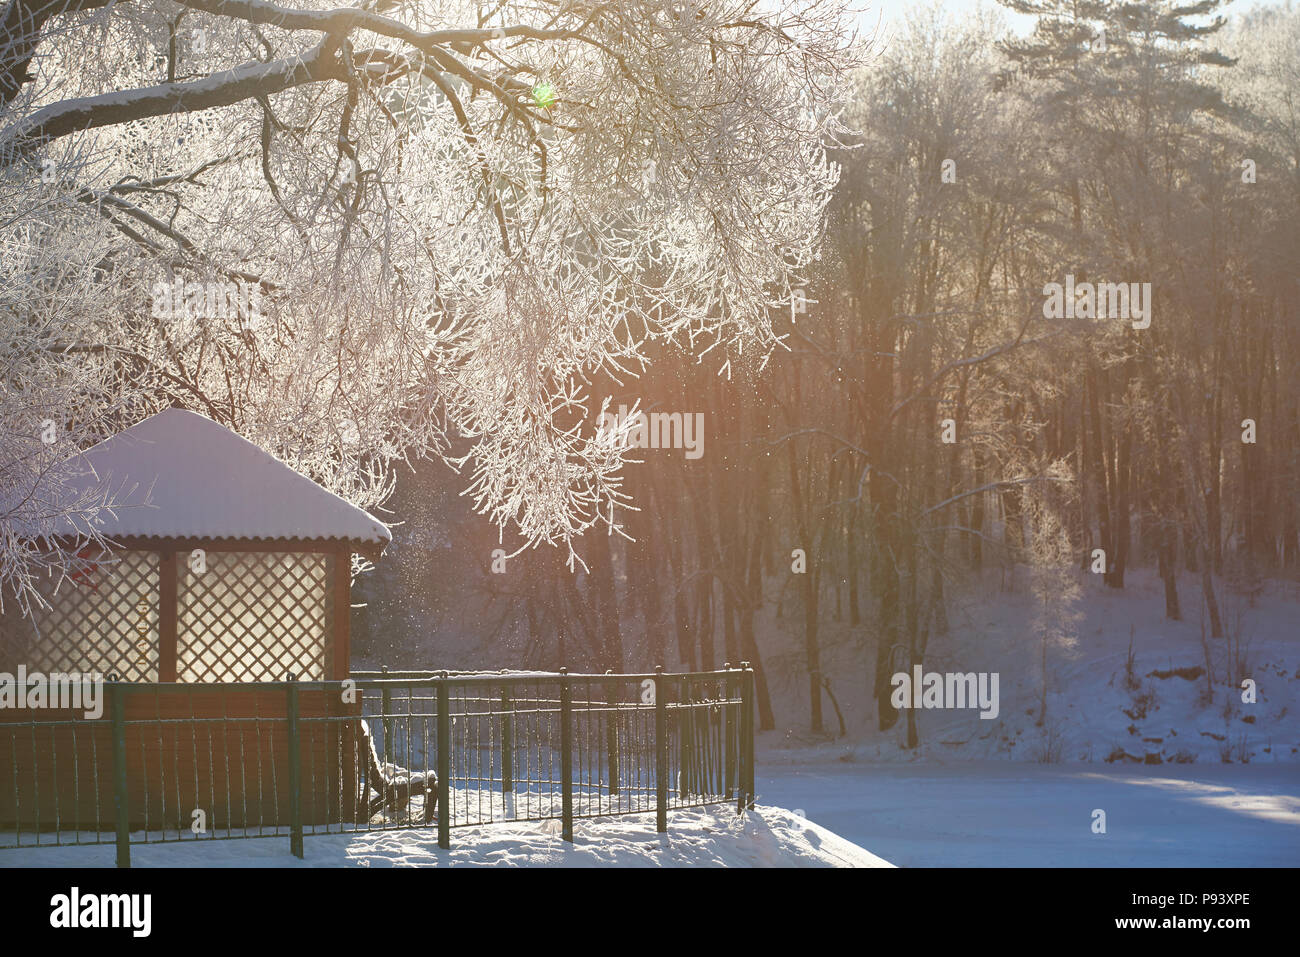 Kleines Haus und Sitzbank im Winter Garten. Kalte eisige Winter Hintergrund Stockfoto